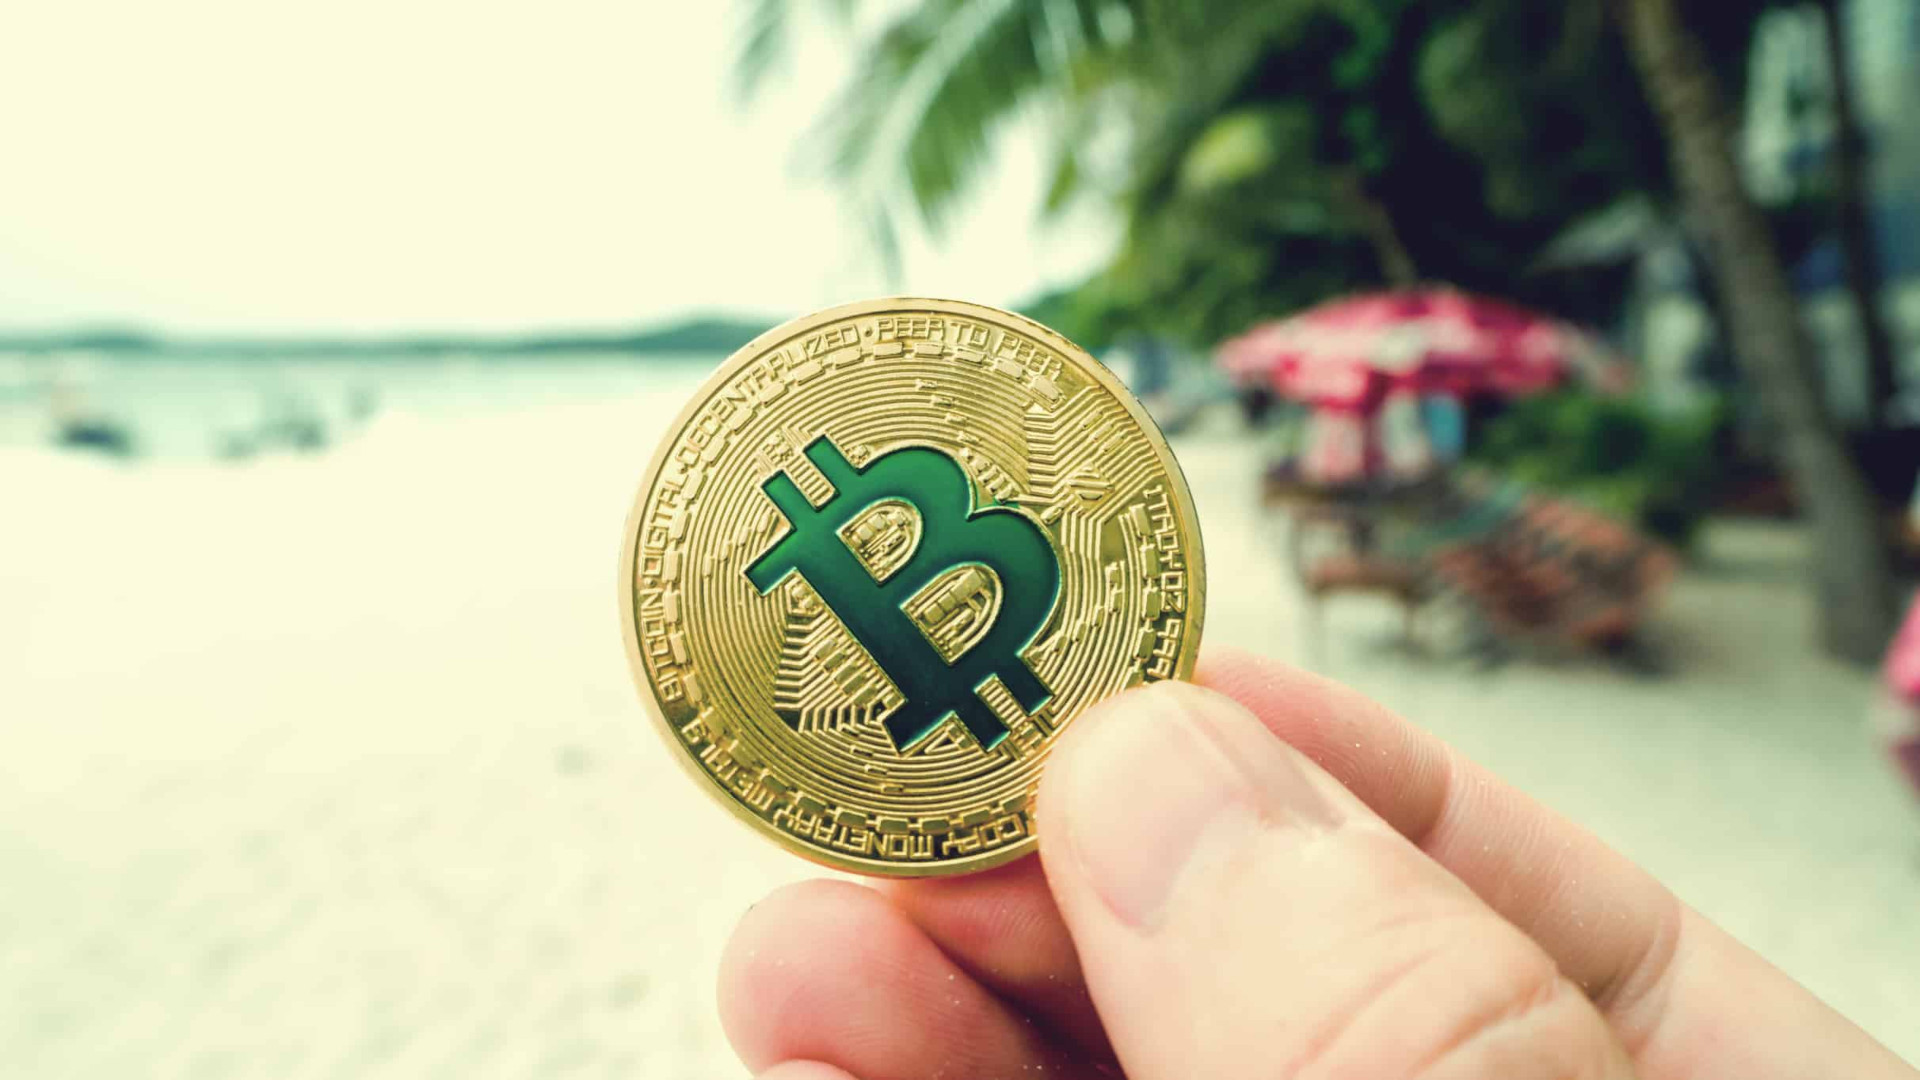 Los especialistas son optimistas sobre el desempeño futuro de Bitcoin